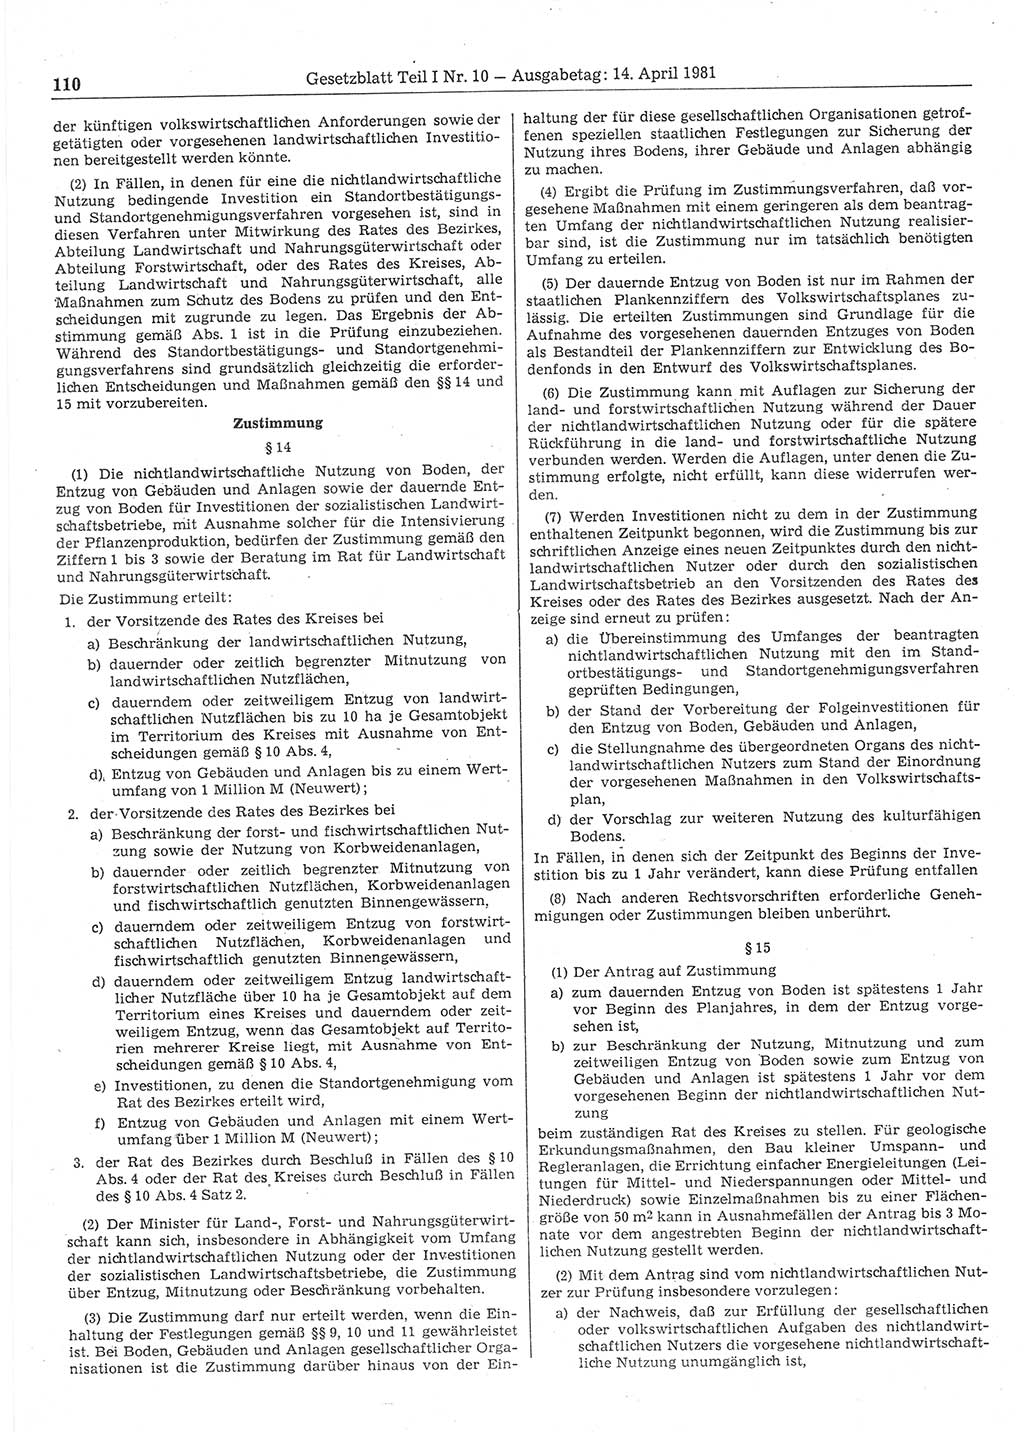 Gesetzblatt (GBl.) der Deutschen Demokratischen Republik (DDR) Teil Ⅰ 1981, Seite 110 (GBl. DDR Ⅰ 1981, S. 110)